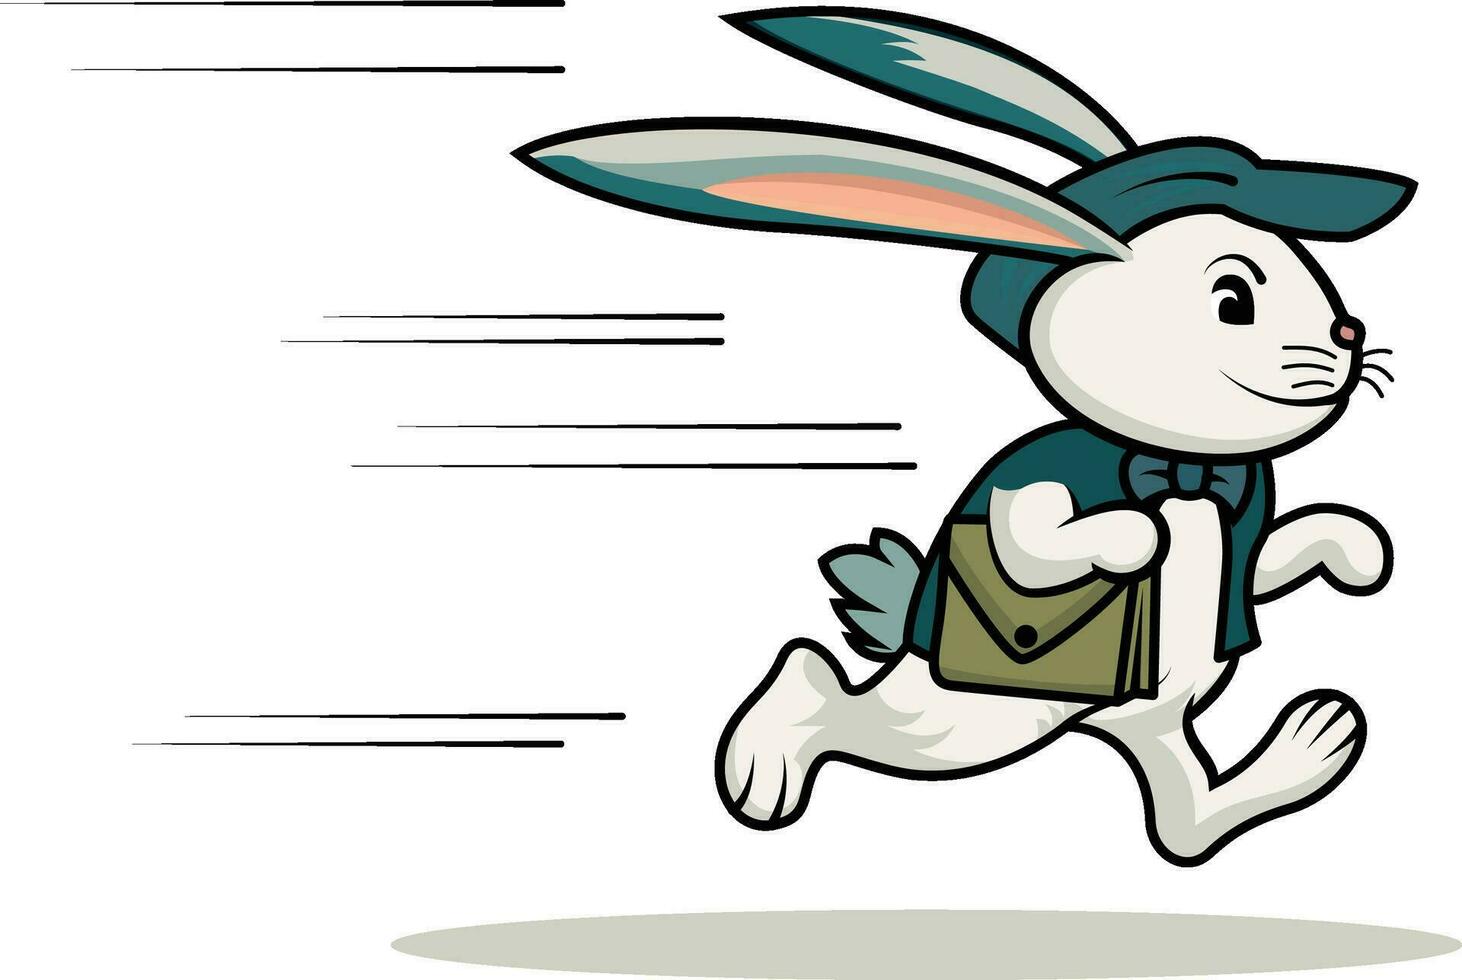 koerier konijn vector illustratie , konijn snel hoppen in de omgeving van naar leveren pakketjes draag- een klein zak vector beeld